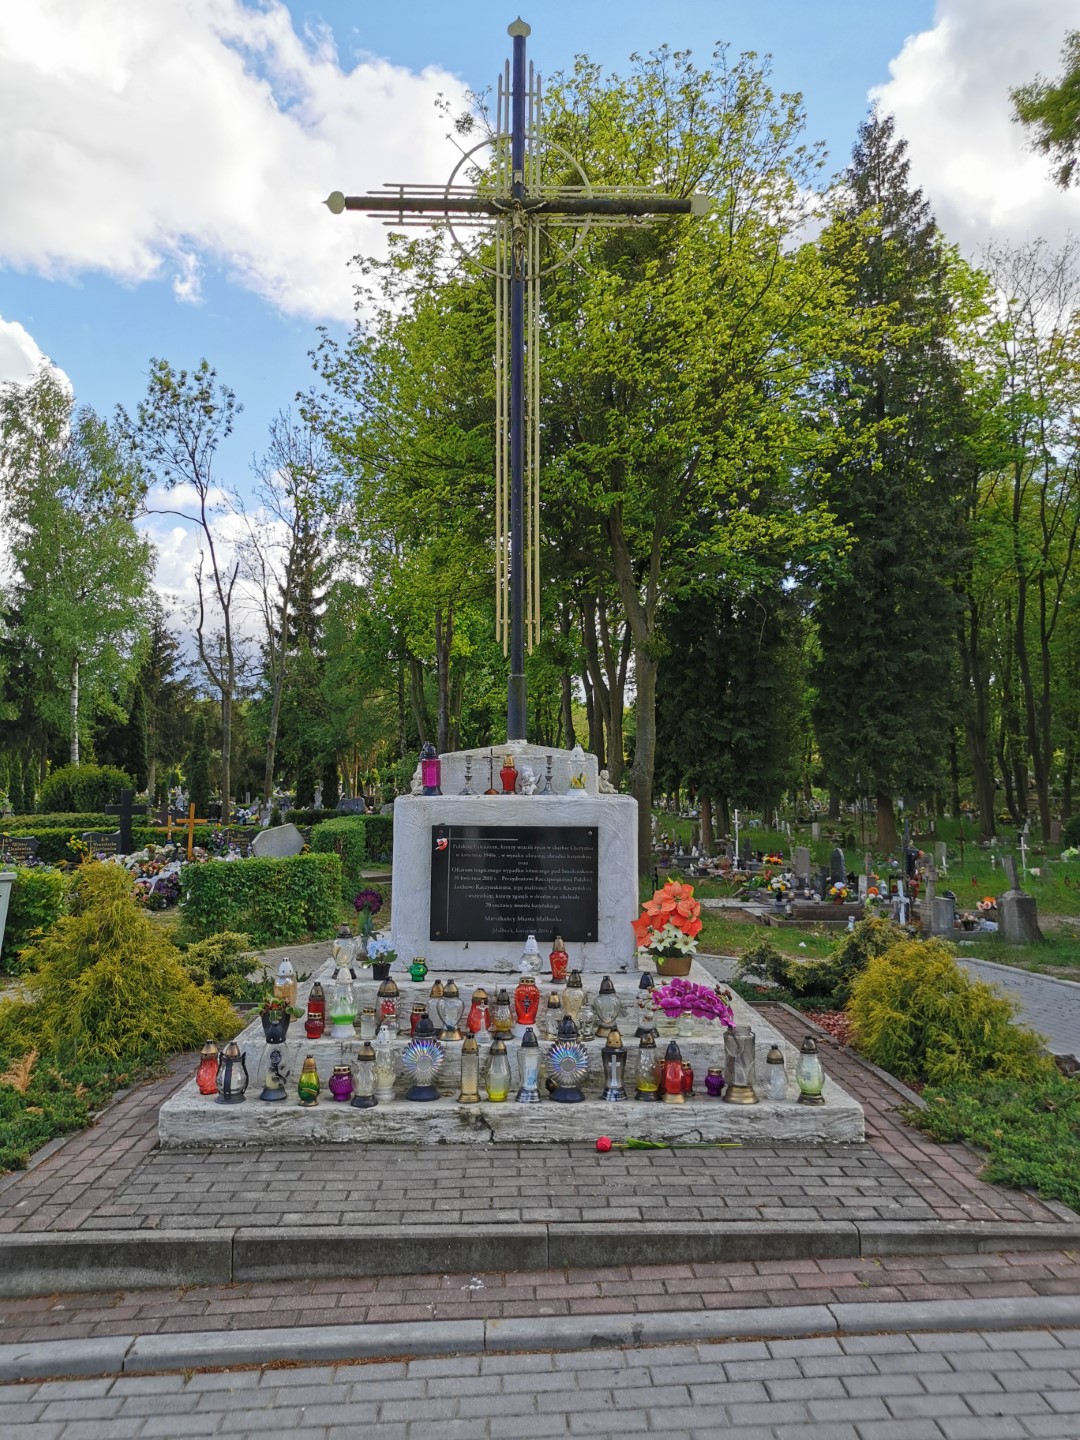 http://m.82-200.pl/2020/05/orig/6-tablica-ku-czci-zamordowanych-w-katyniu-i-ofiar-katstrofy-smolenskiej-krzyz-na-cmentarzu-komunalnym-5895.jpg